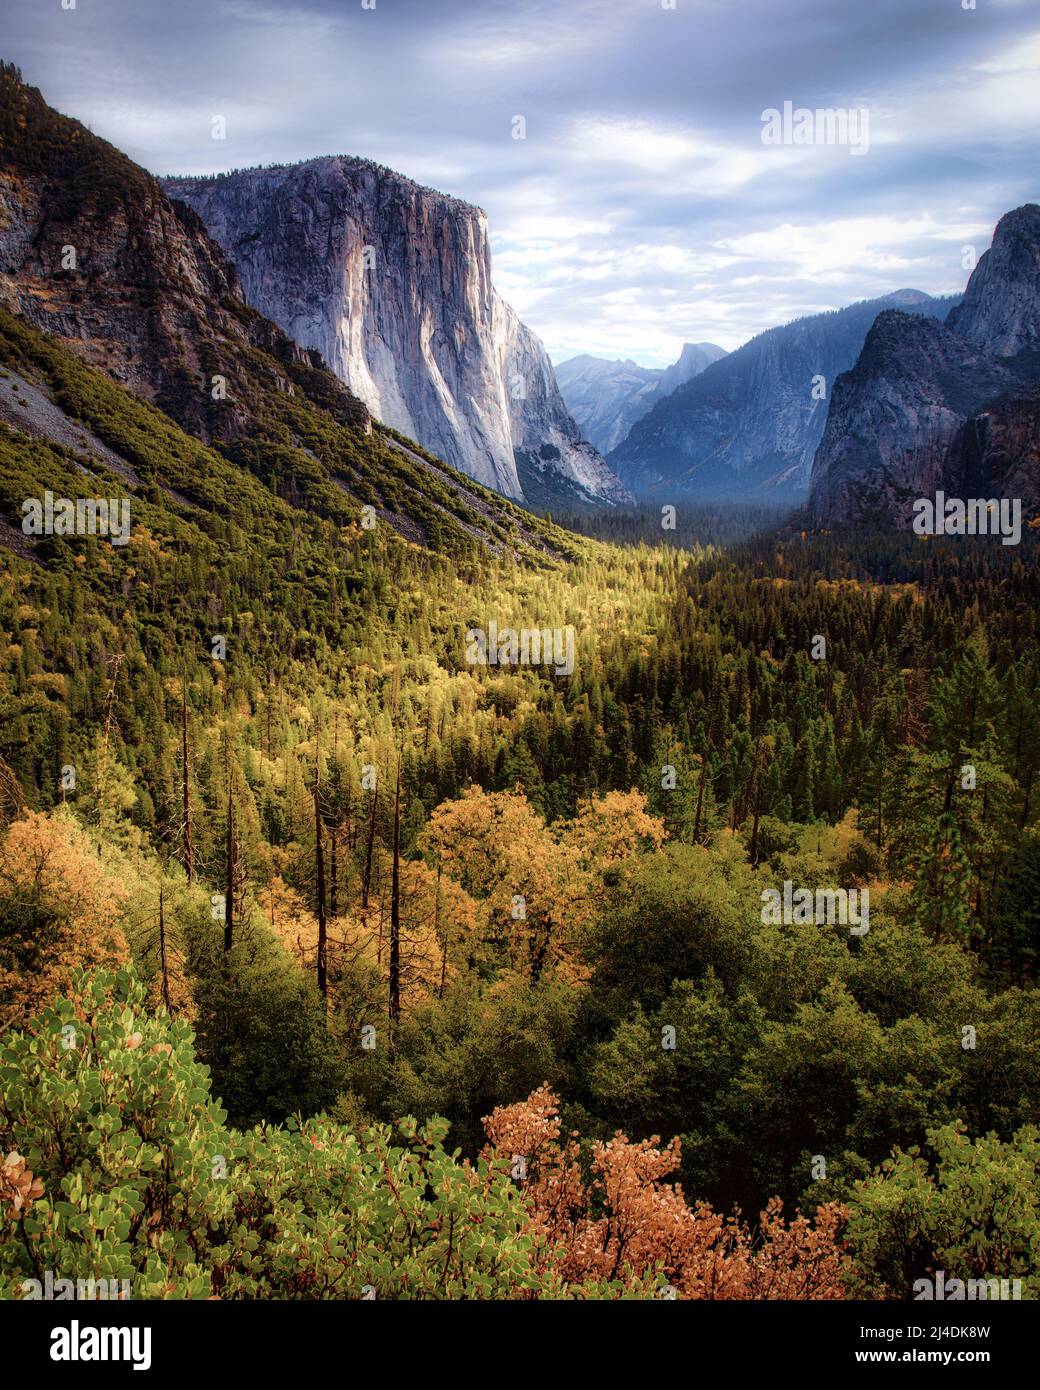 La vallée de Yosemite se réchauffe sous le soleil du matin dans le parc national de Yosemite, en Californie. Banque D'Images